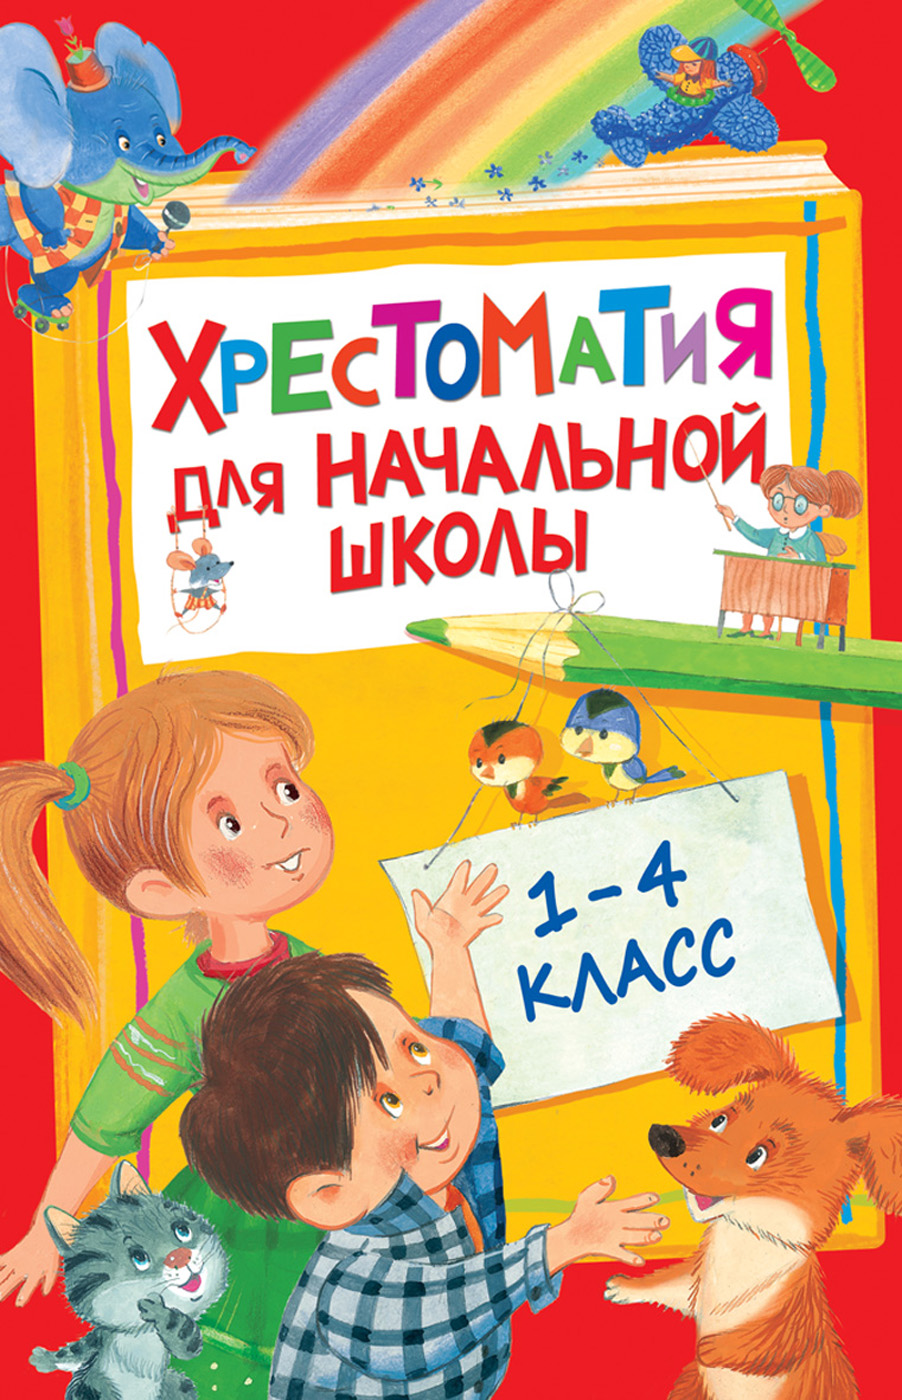 Книга 28524 Хрестоматия для начальной школы 1-4 класс Росмэн - Саранск 